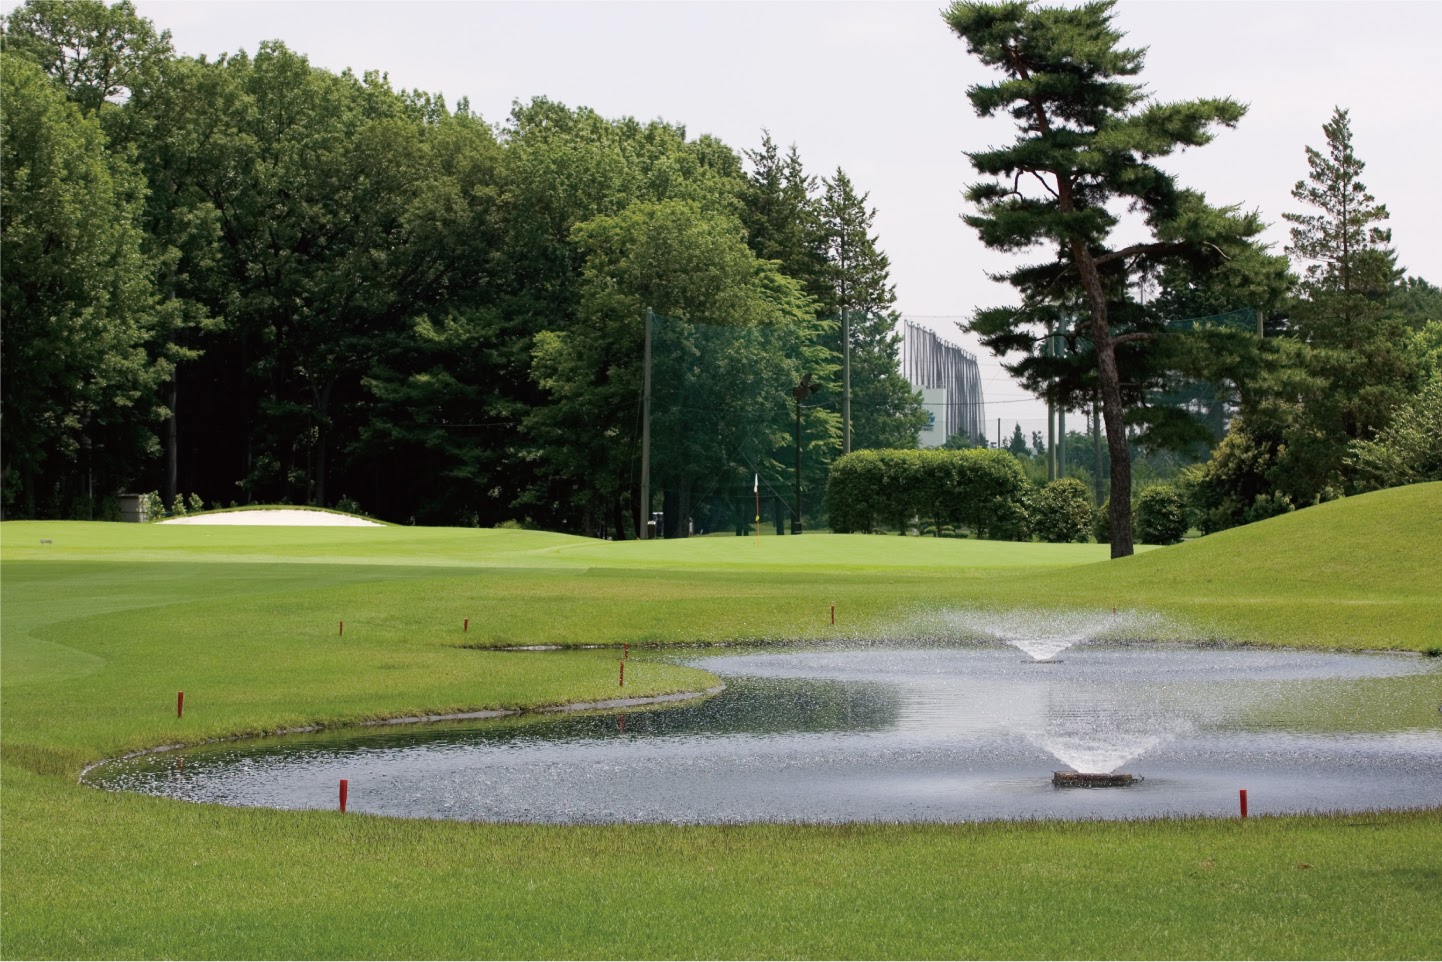 Showa-no-mori Golf Course